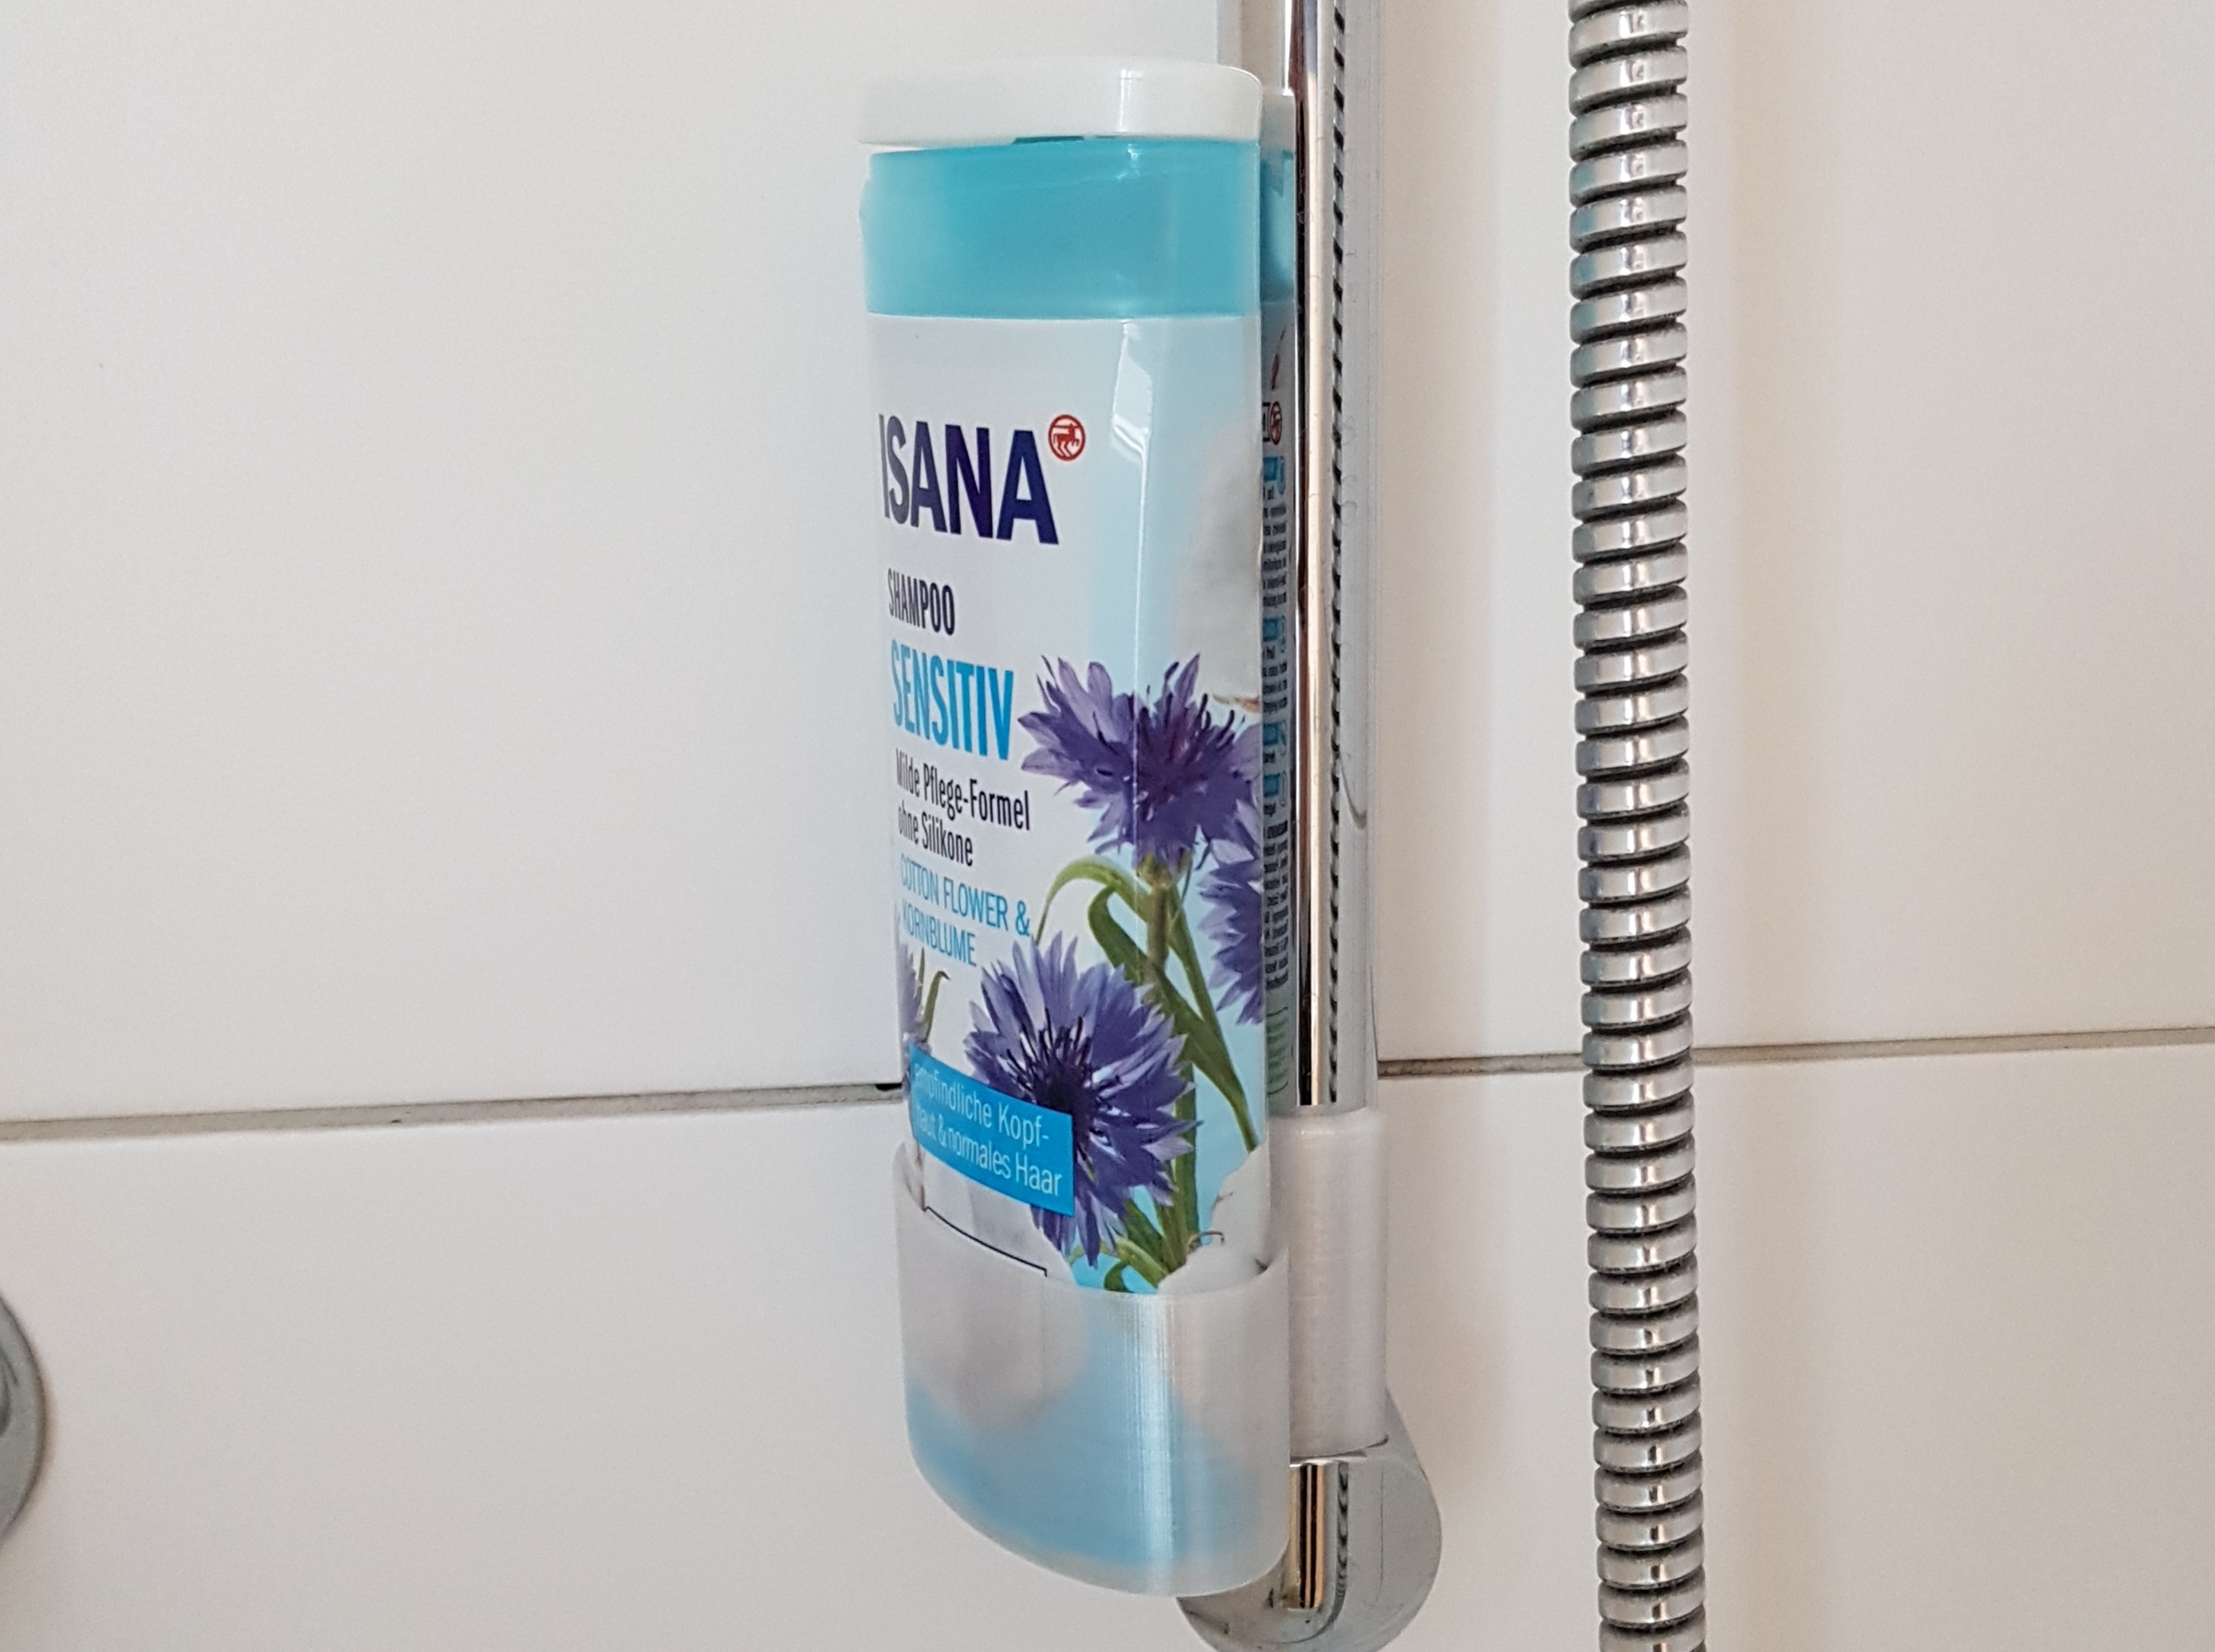 GoShelf: Stylish, Seamless Ceramic Shampoo Holder for Your Shower - GoShelf™